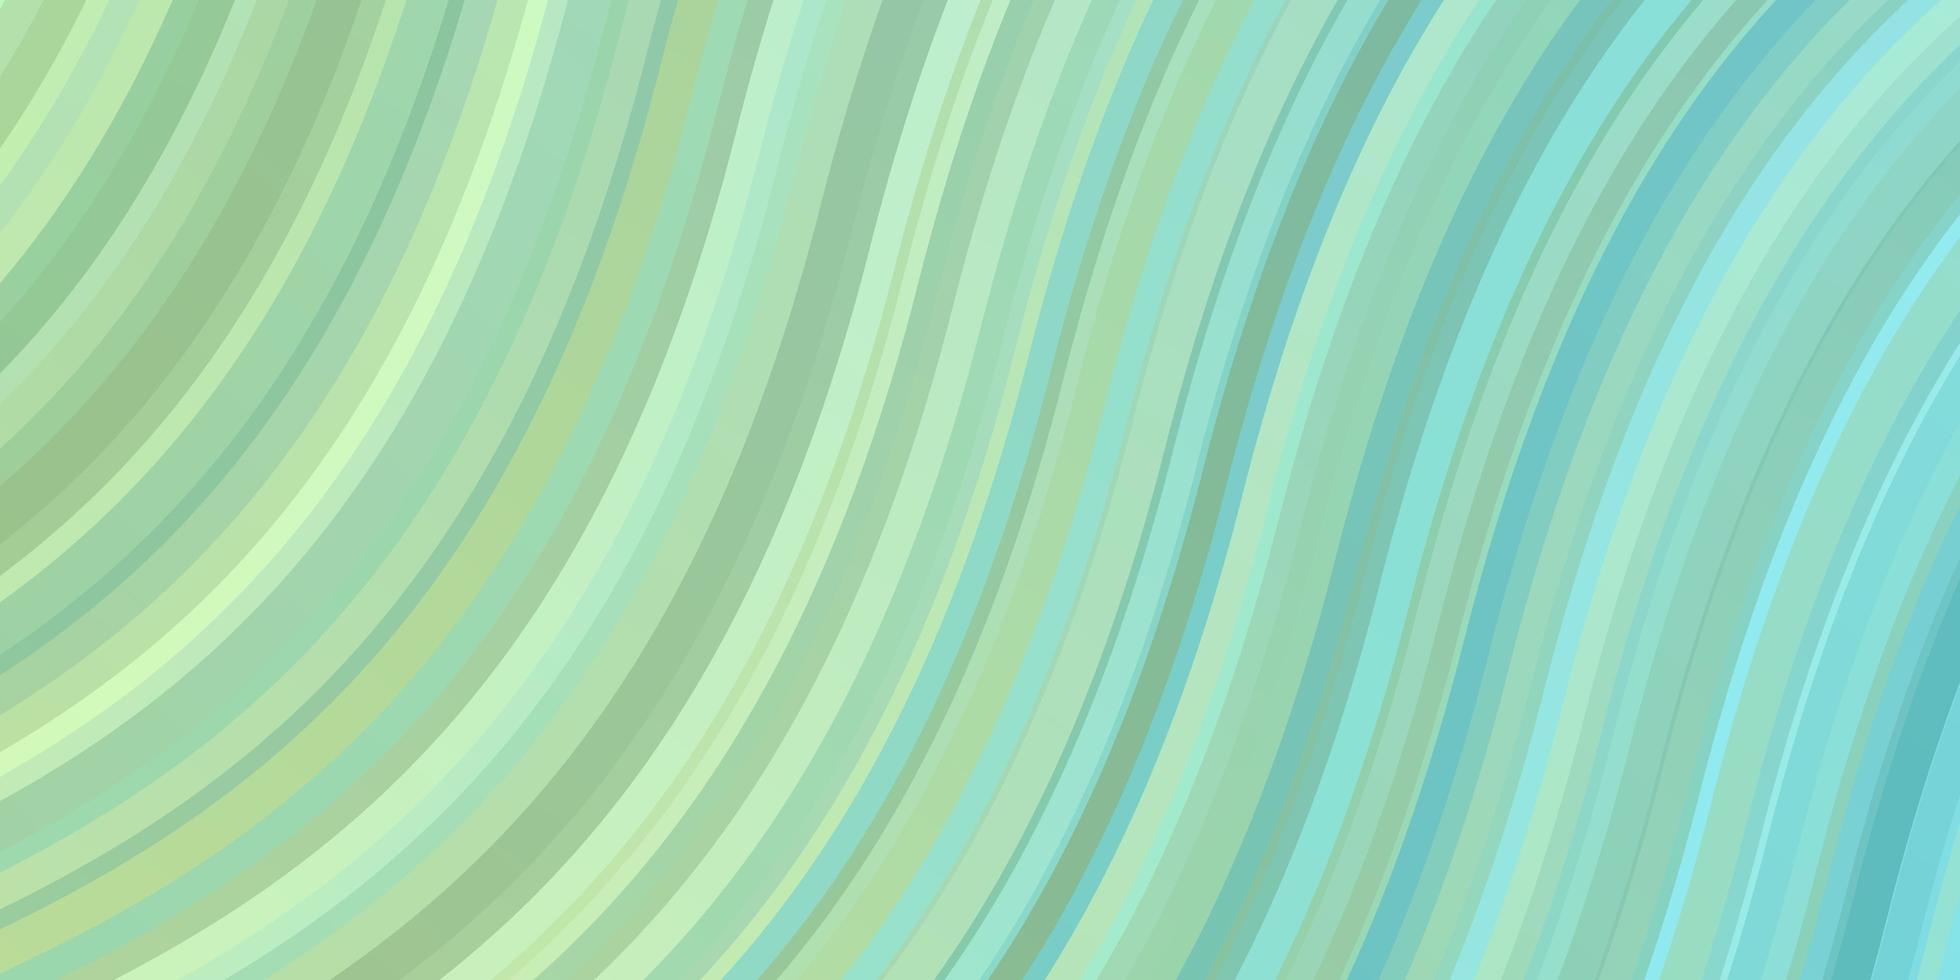 lichtblauw, groen vector sjabloon met lijnen.